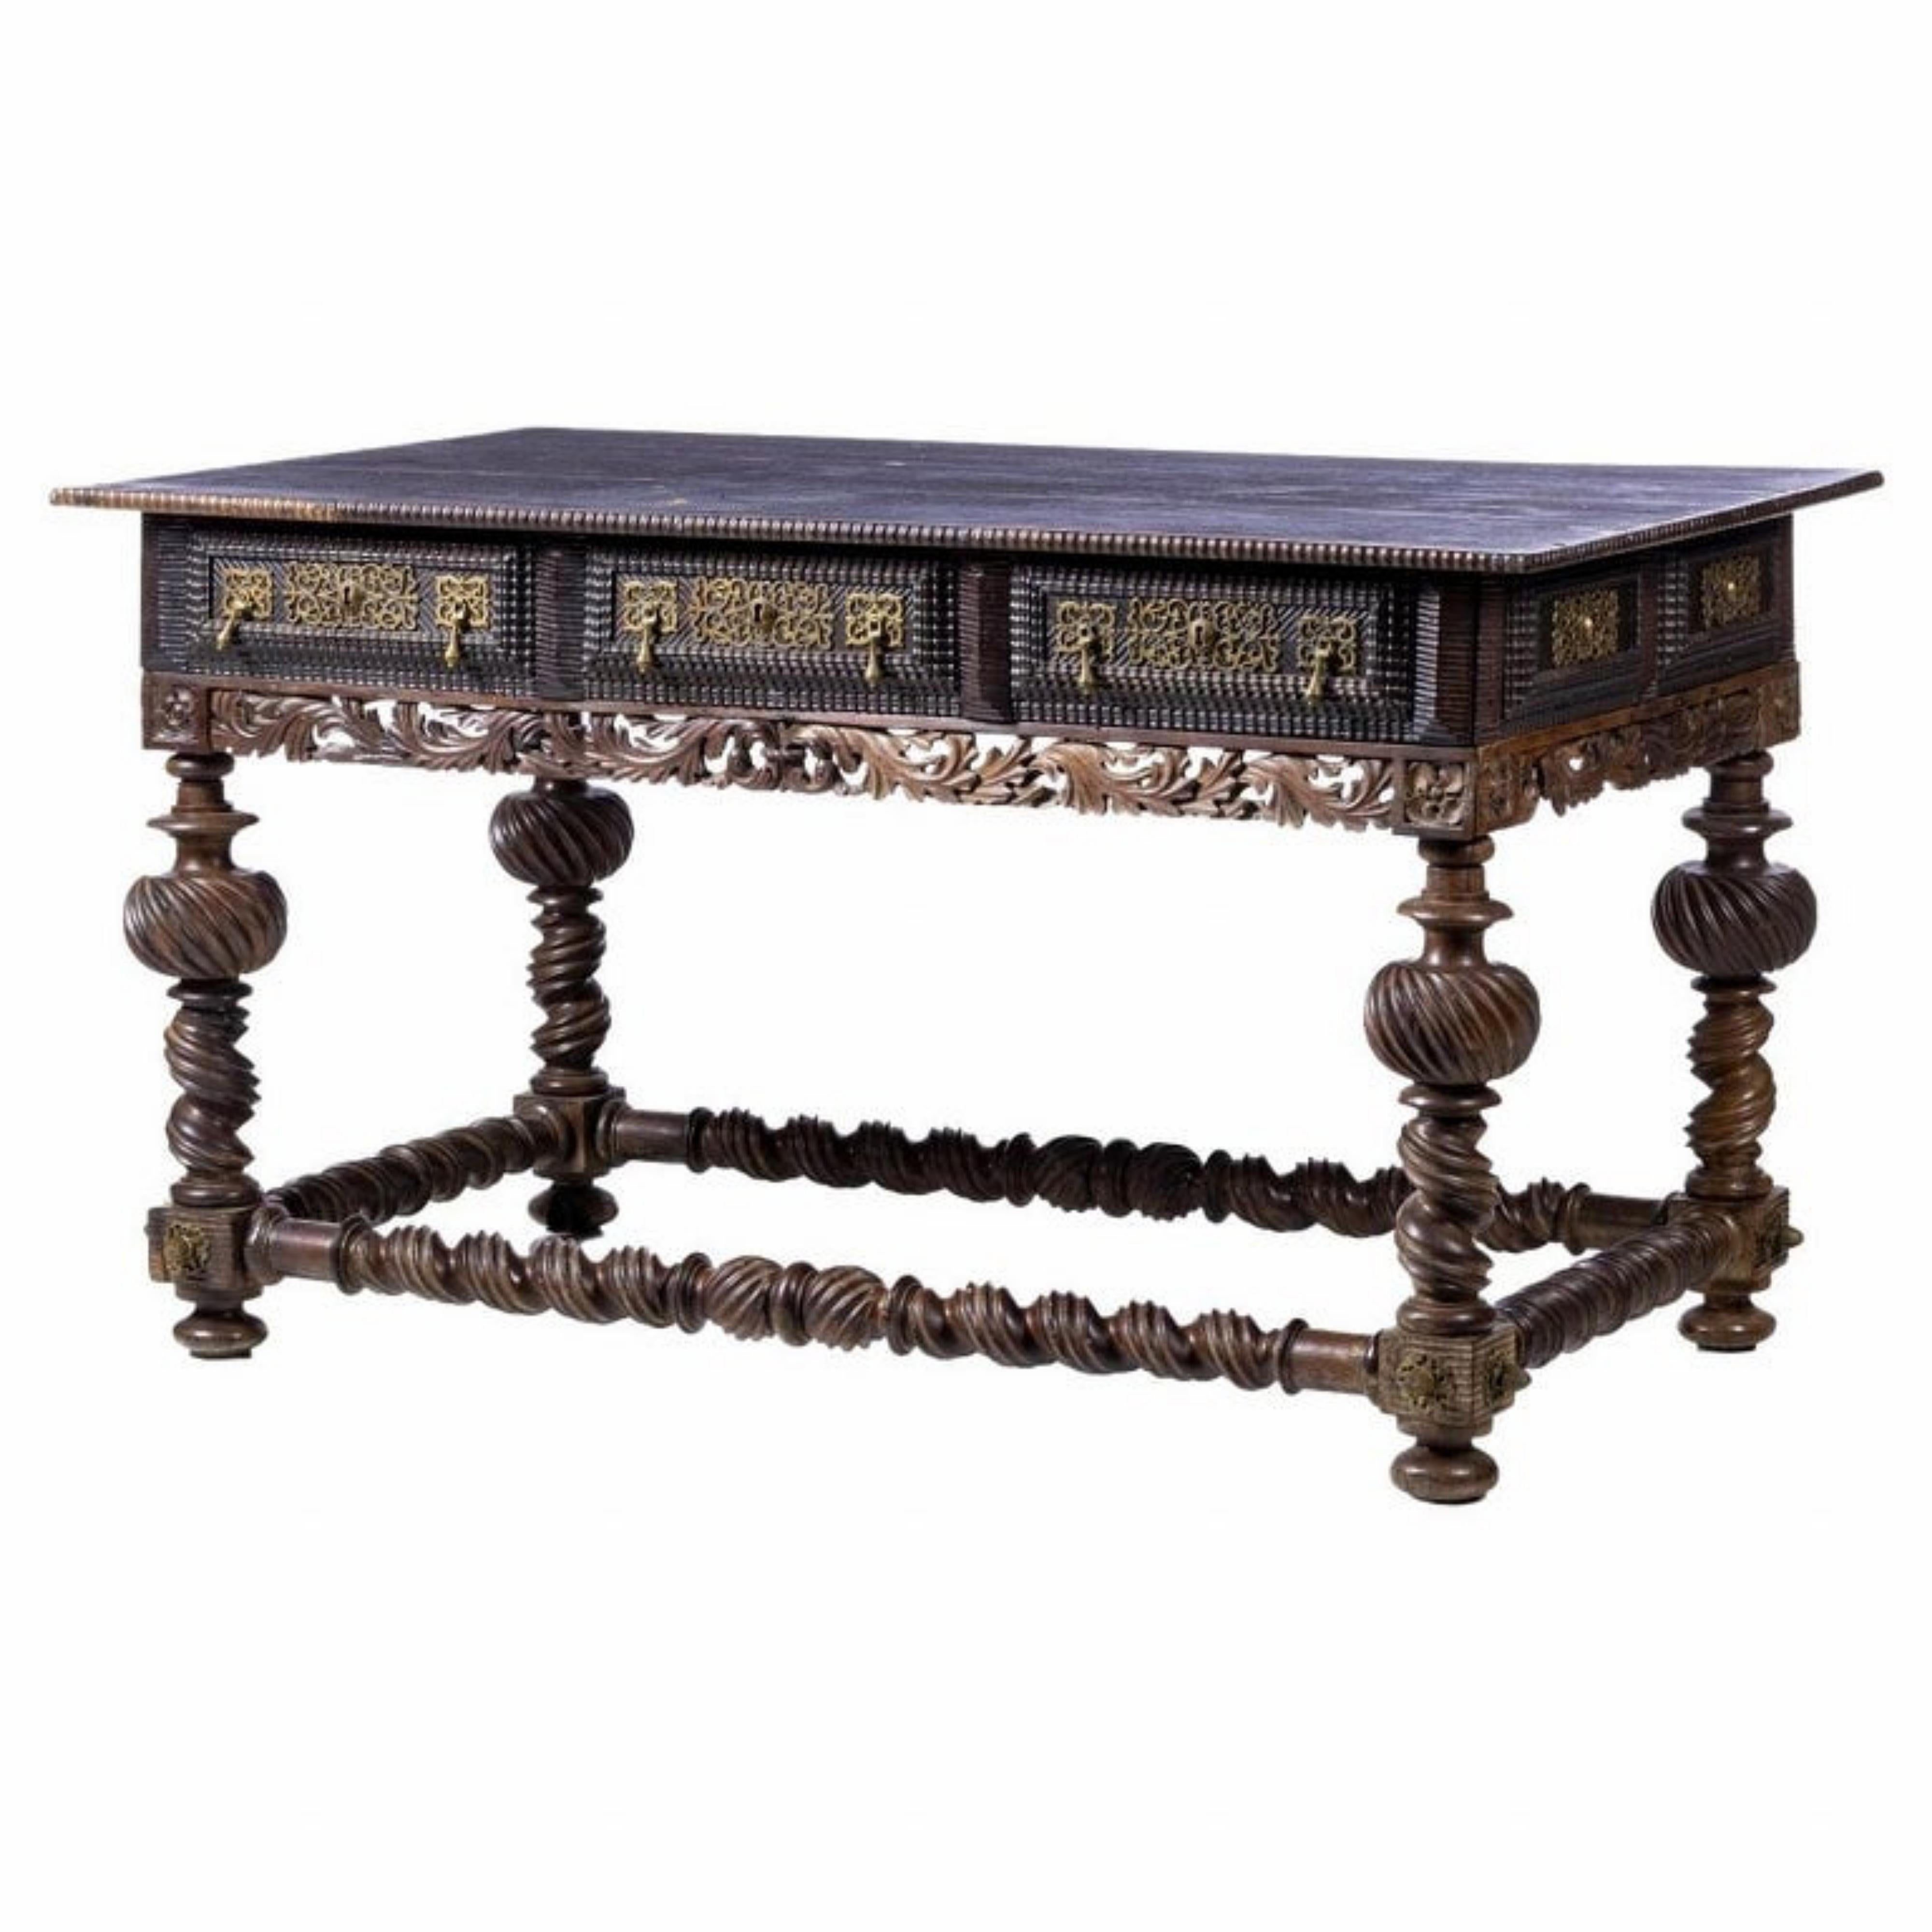 Wichtiger portugiesischer Tisch Bufete 18. Jahrhundert

Aus Palisanderholz mit verdrehten und zitternden Schnitzereien. Rechteckige Tischplatte, auf der Vorderseite und an den Seiten von einem gezackten Fries umrahmt, Bund mit drei Schubladen, mit